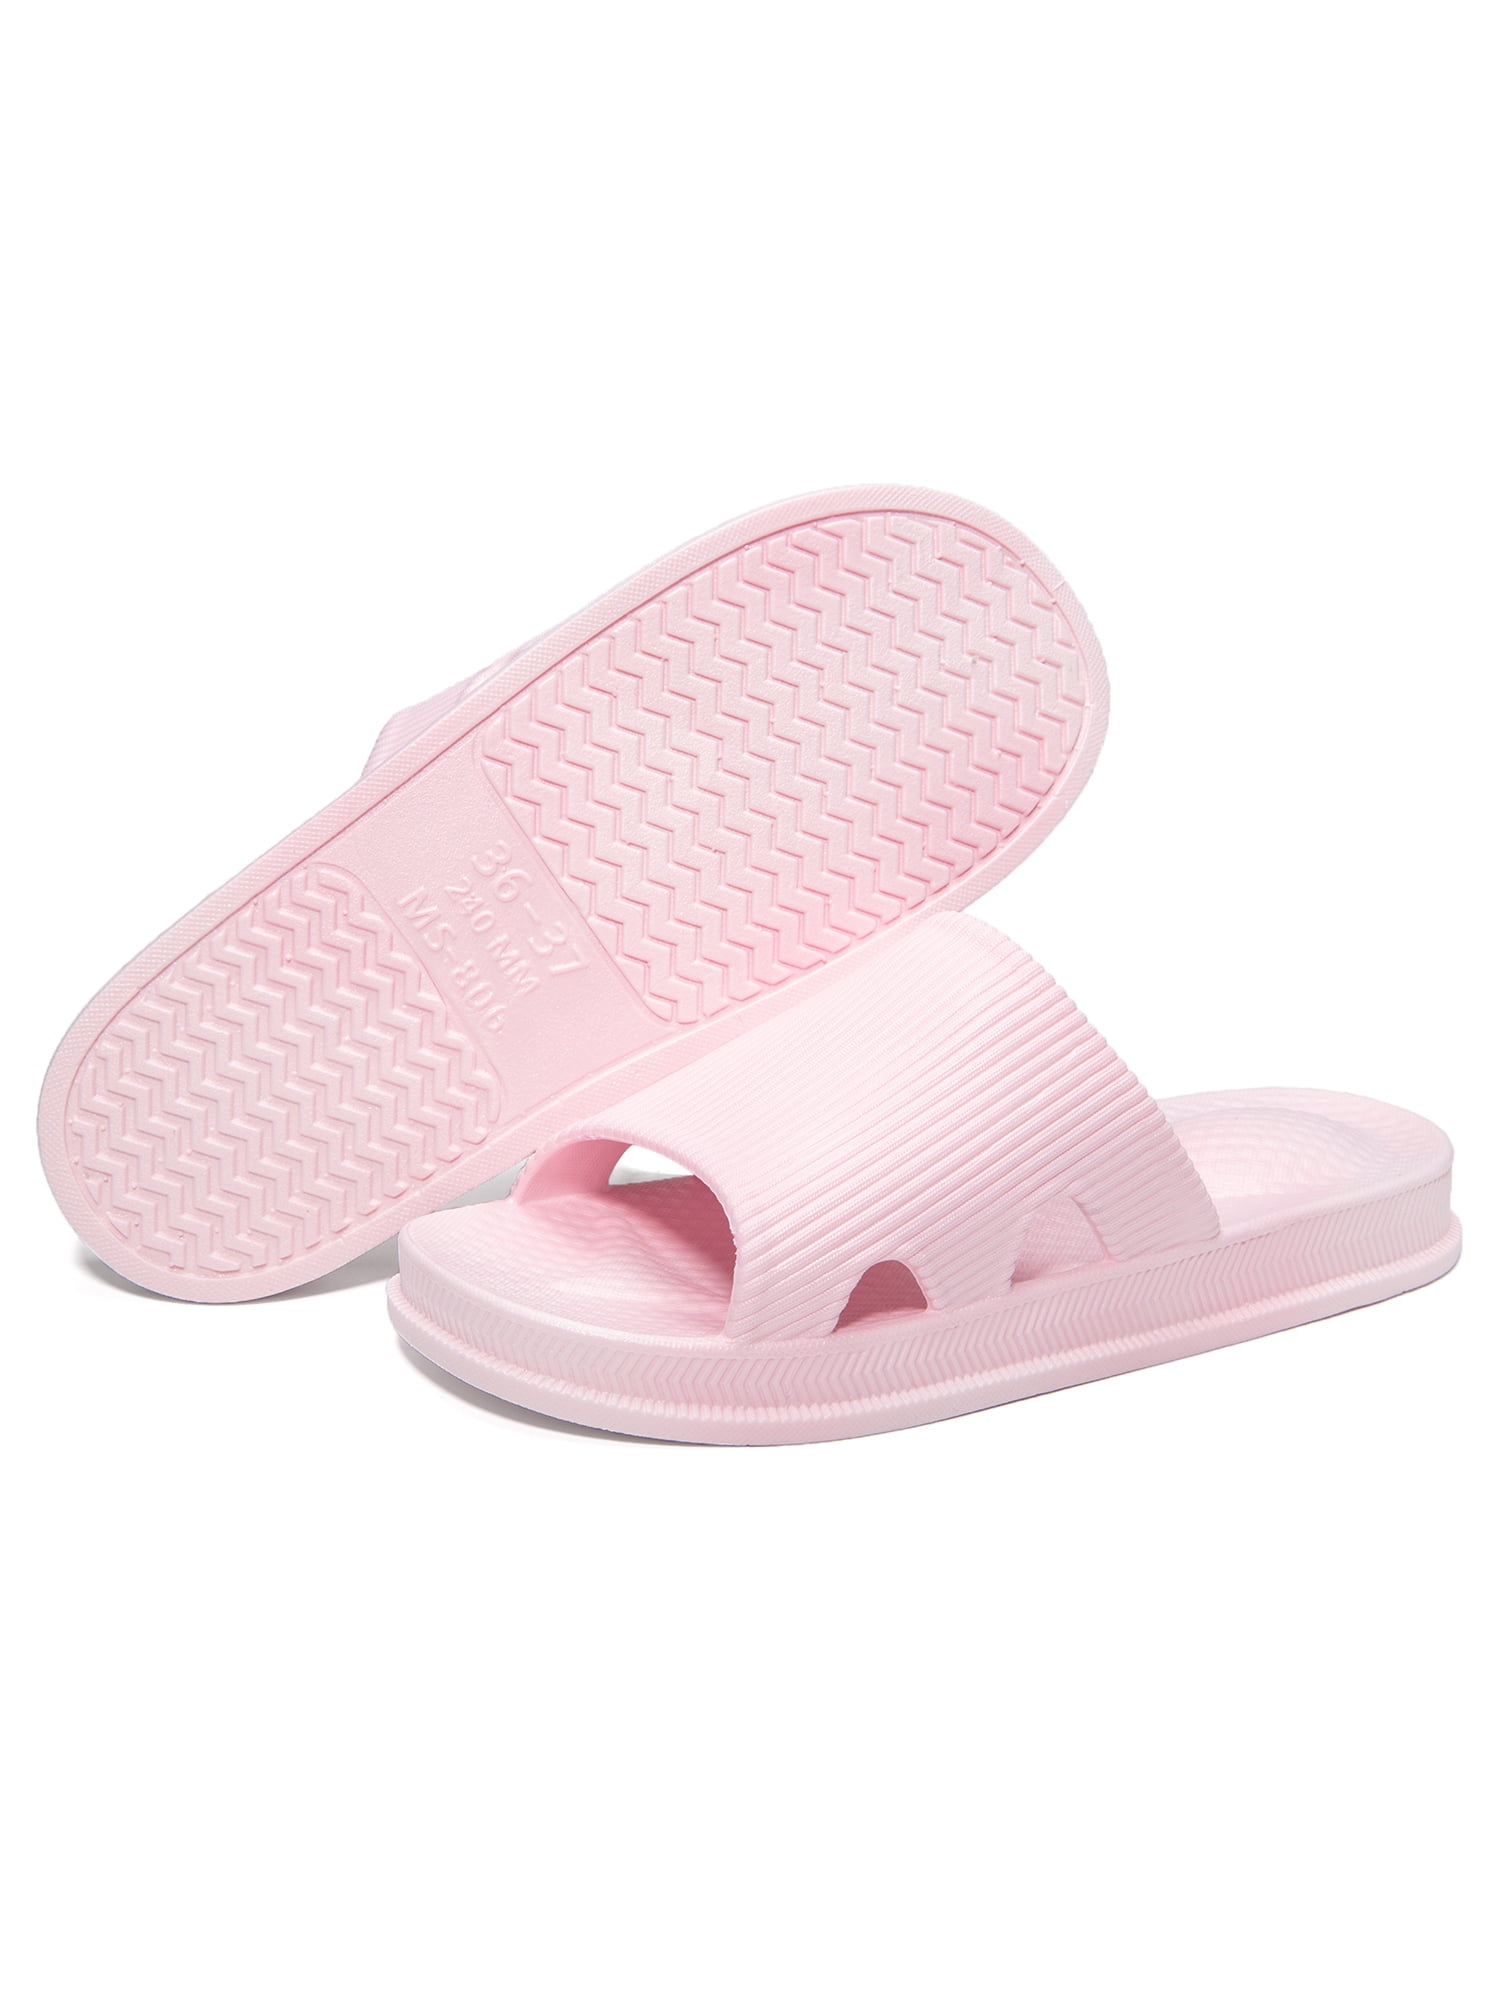 anti slip slippers for bathroom